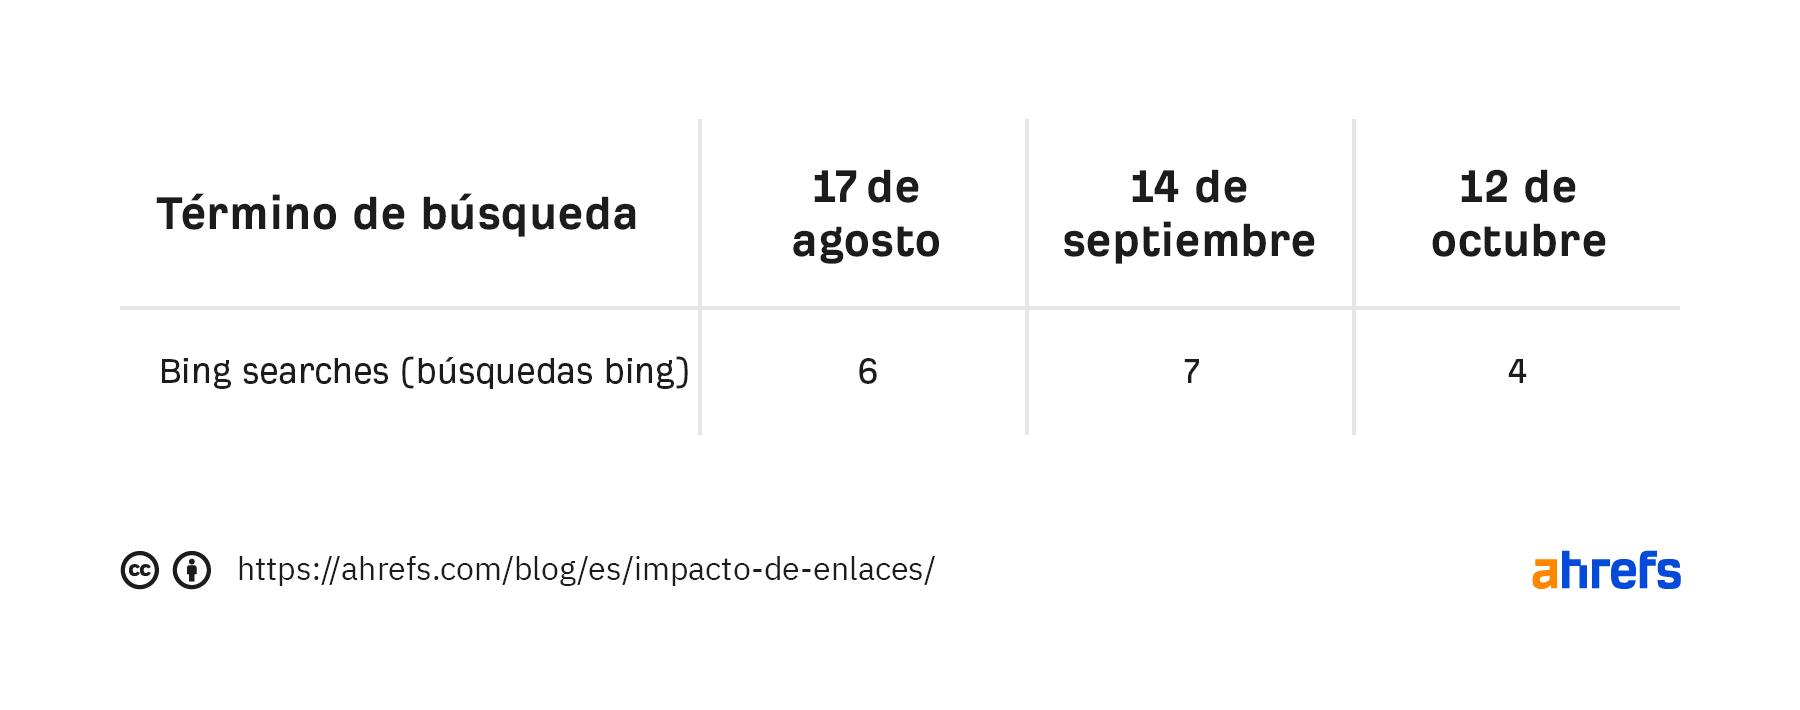 Lista de términos y cambios de ranking para la frase bing searches correspondientes al 17 de agosto, 14 de septiembre y 12 de octubre.